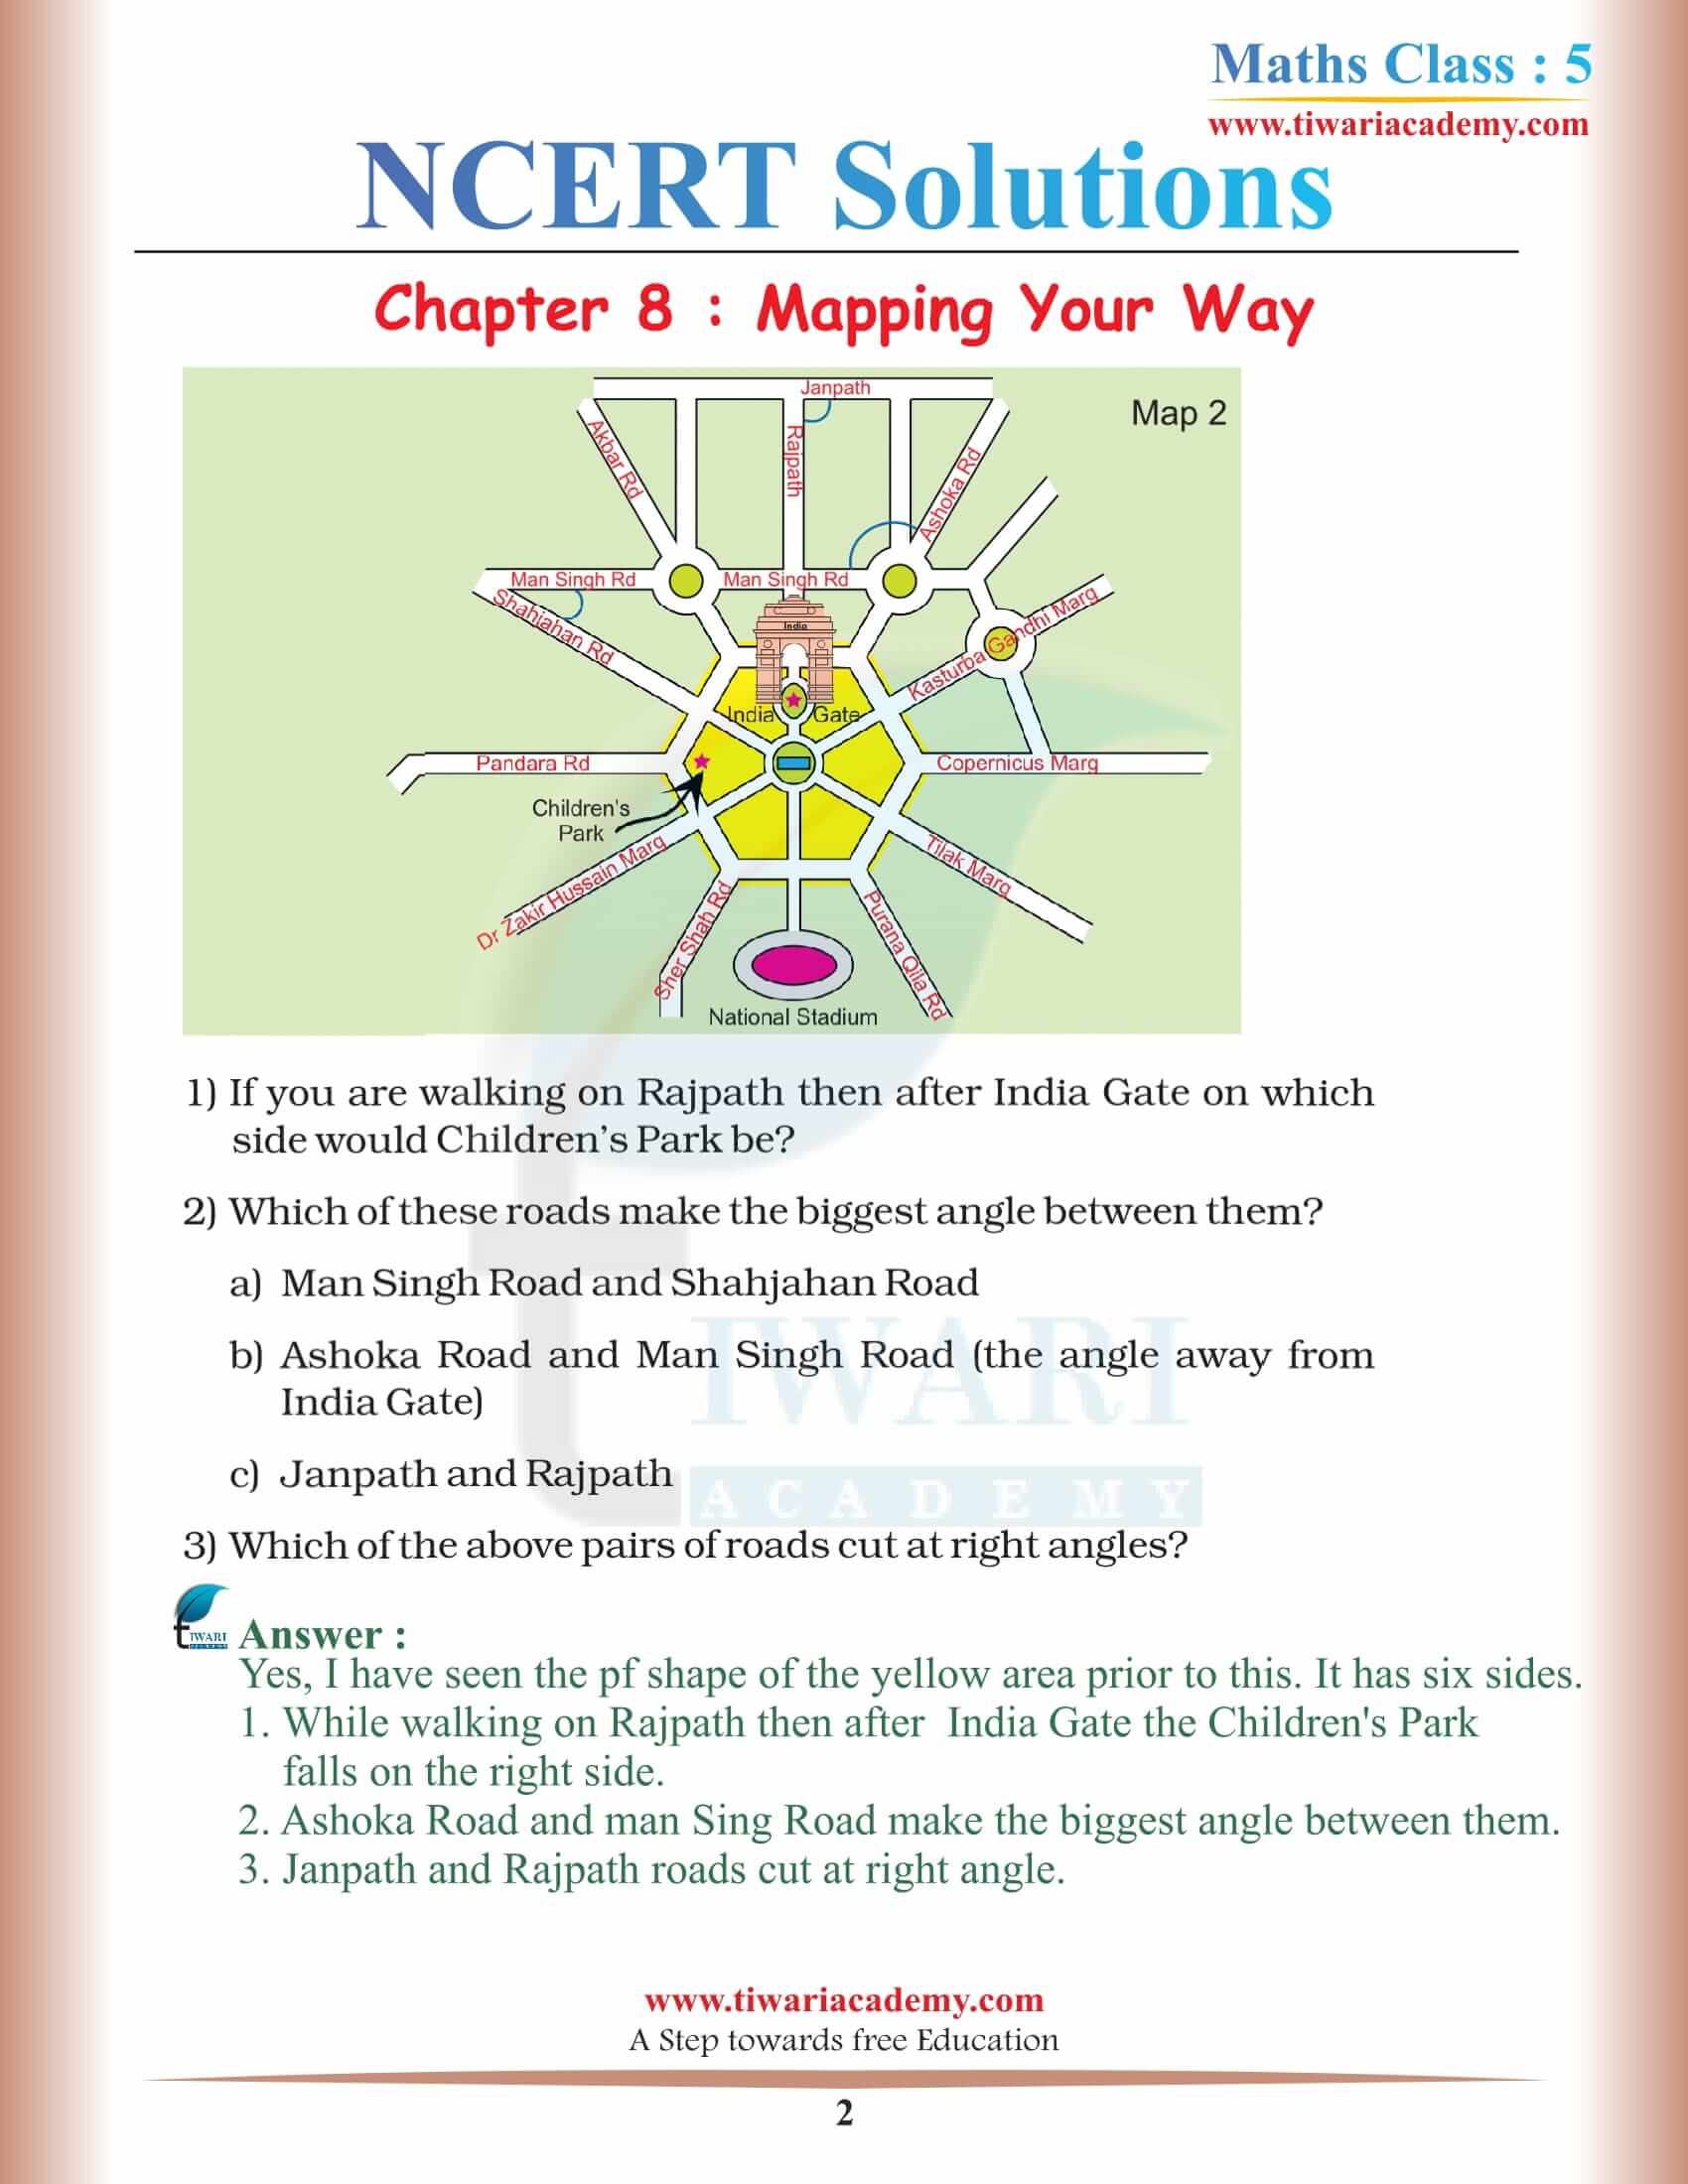 NCERT Solutions for Class 5 Maths Chapter 8